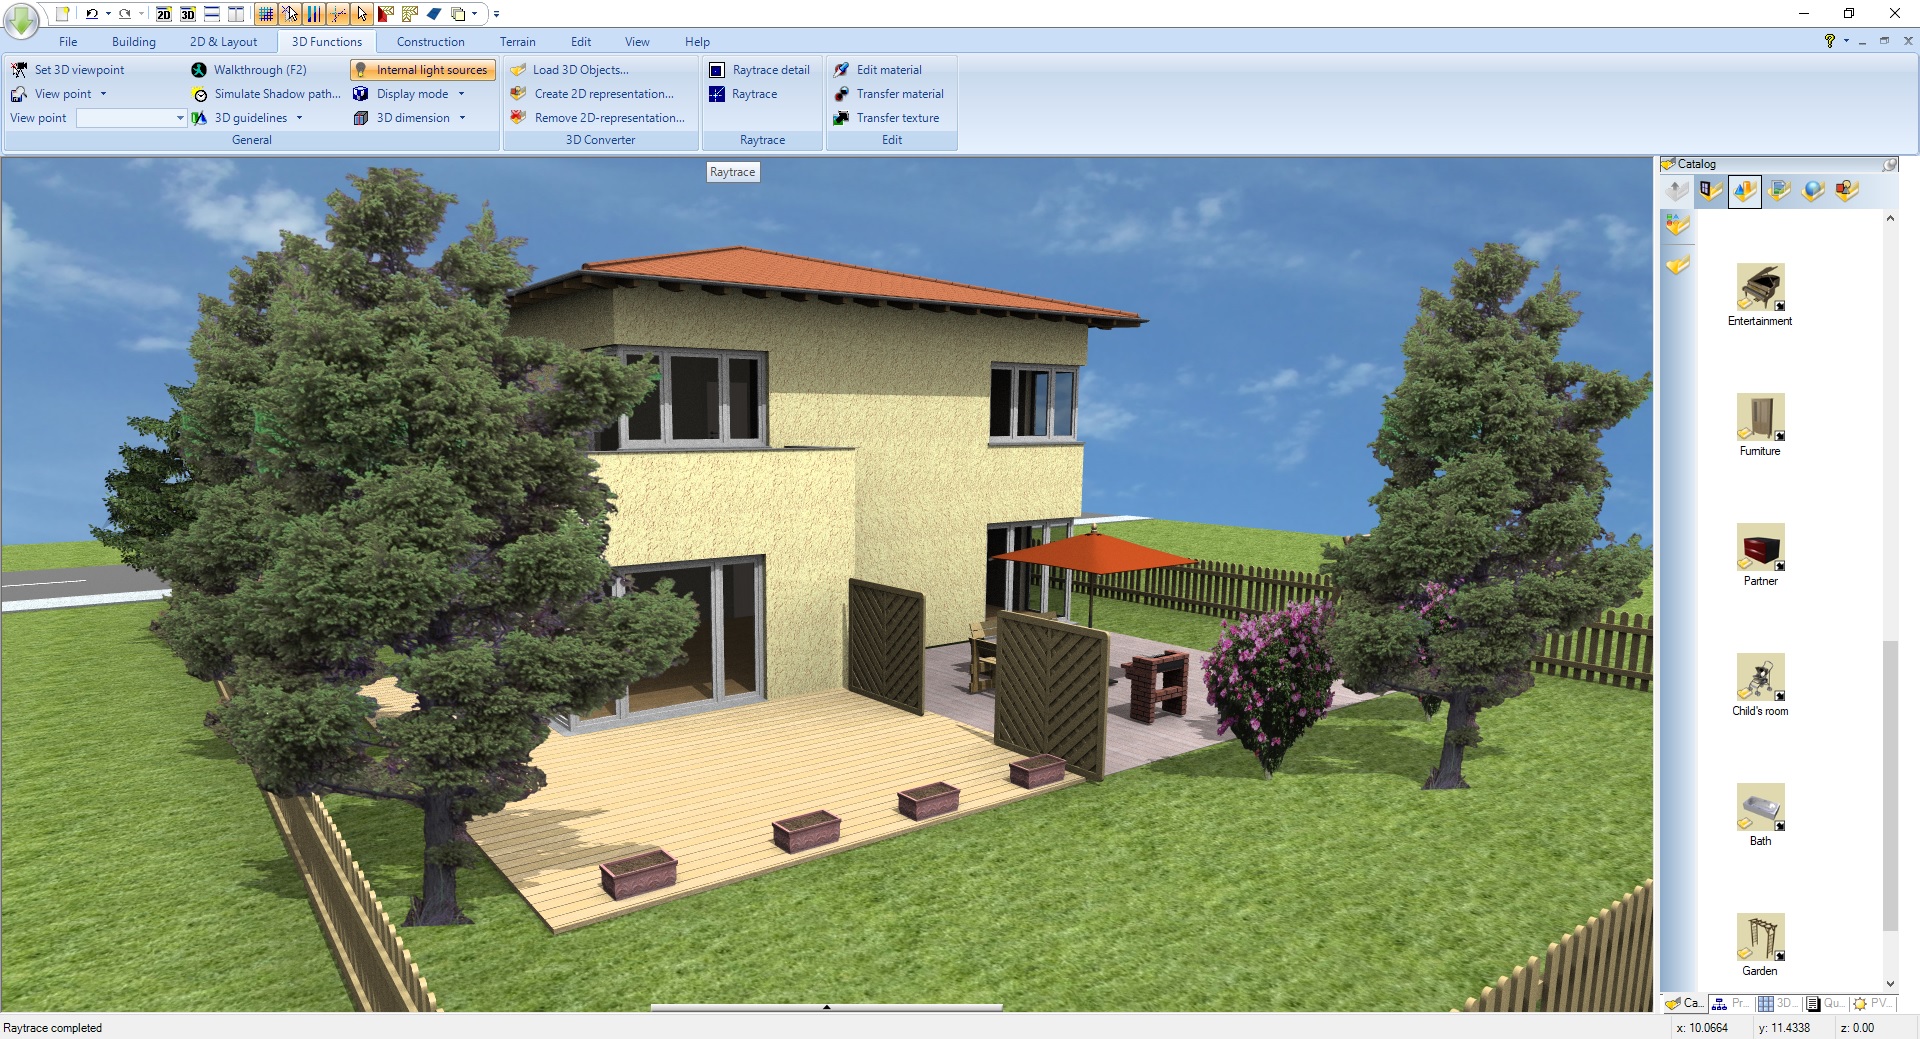 Home Design 3D en Steam